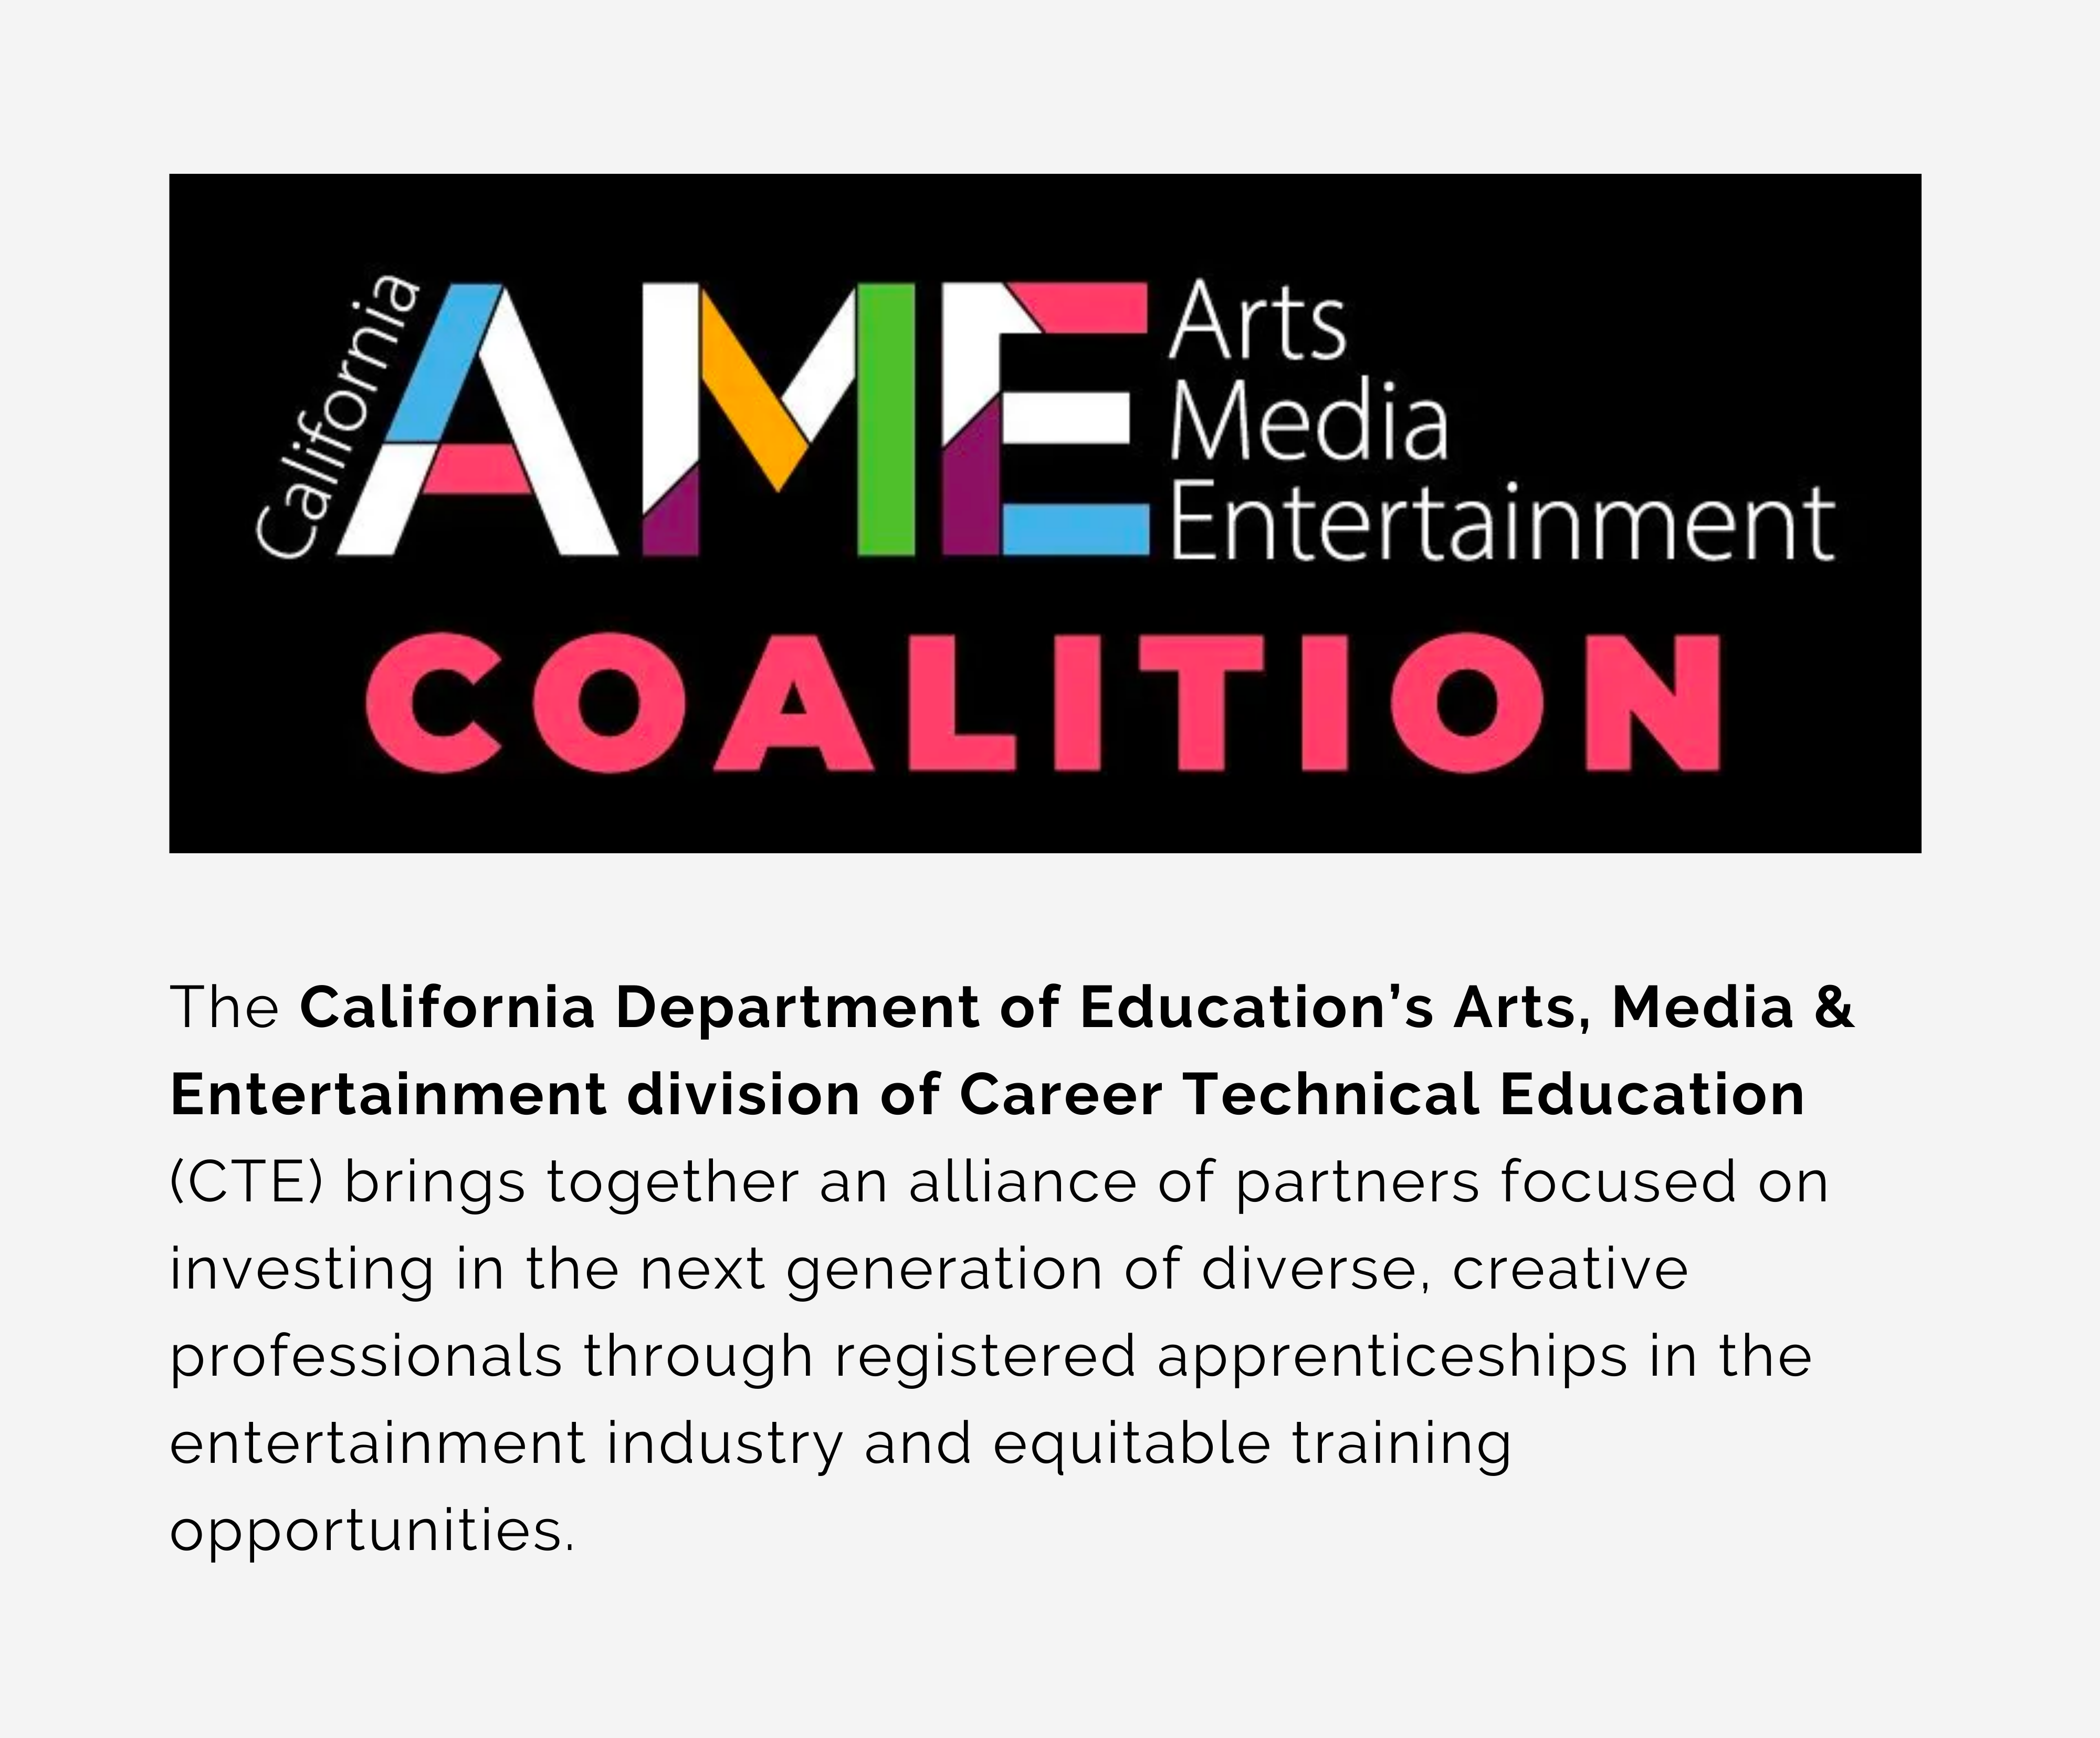 Departamento de Educación de California AME Arts Media Entertainment Coalition CTE